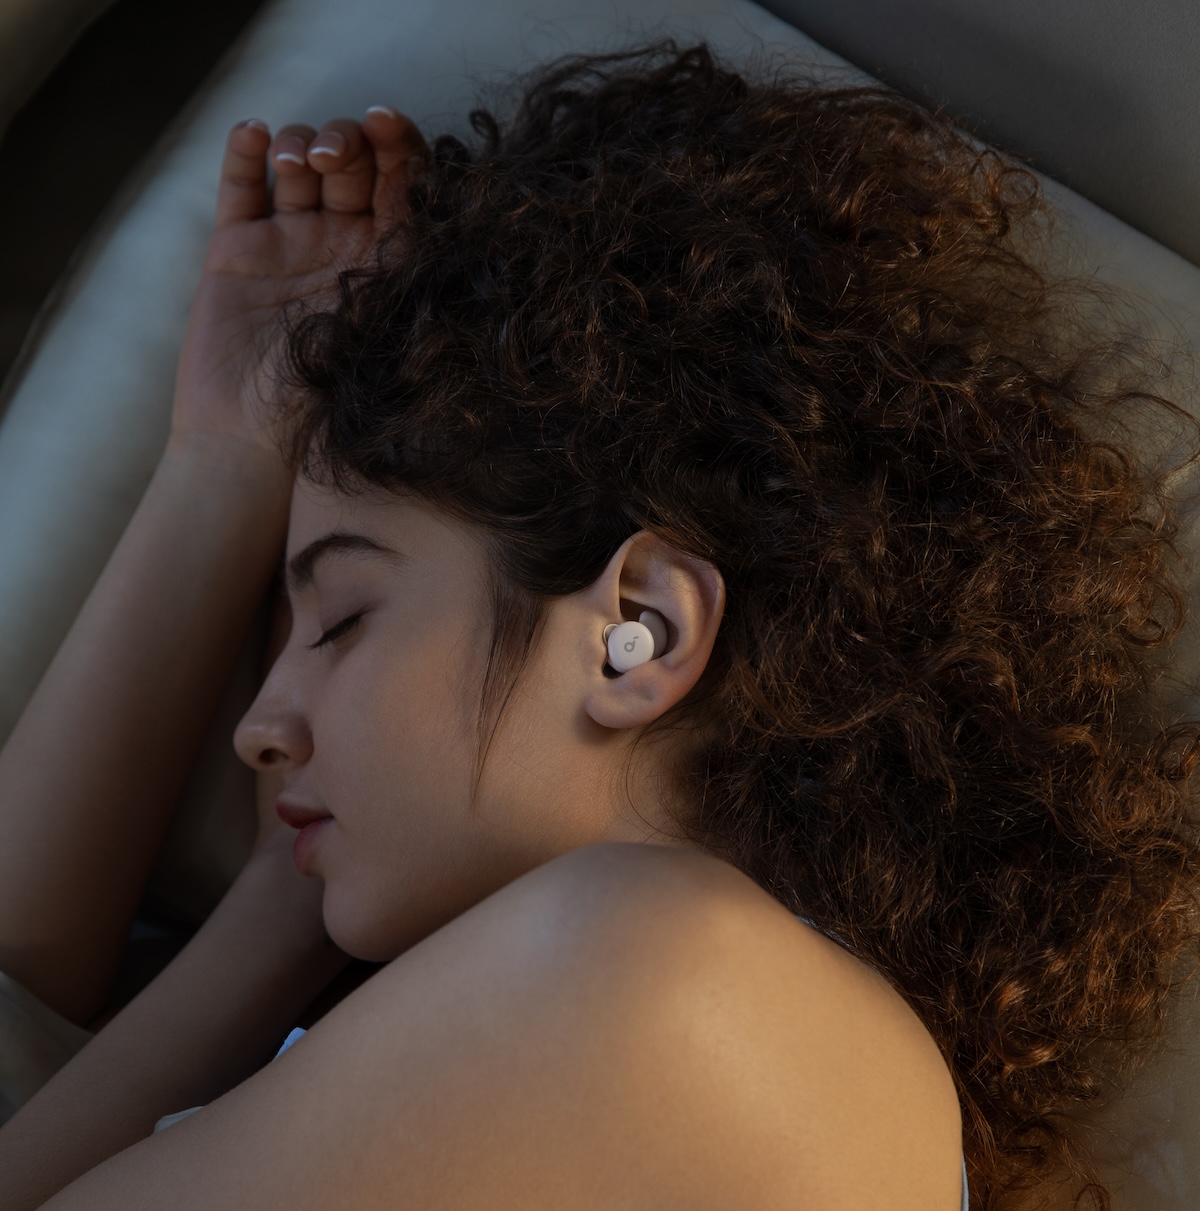 Soundcore lanserar öronsnäckorna Sleep A20  för att sova bättre